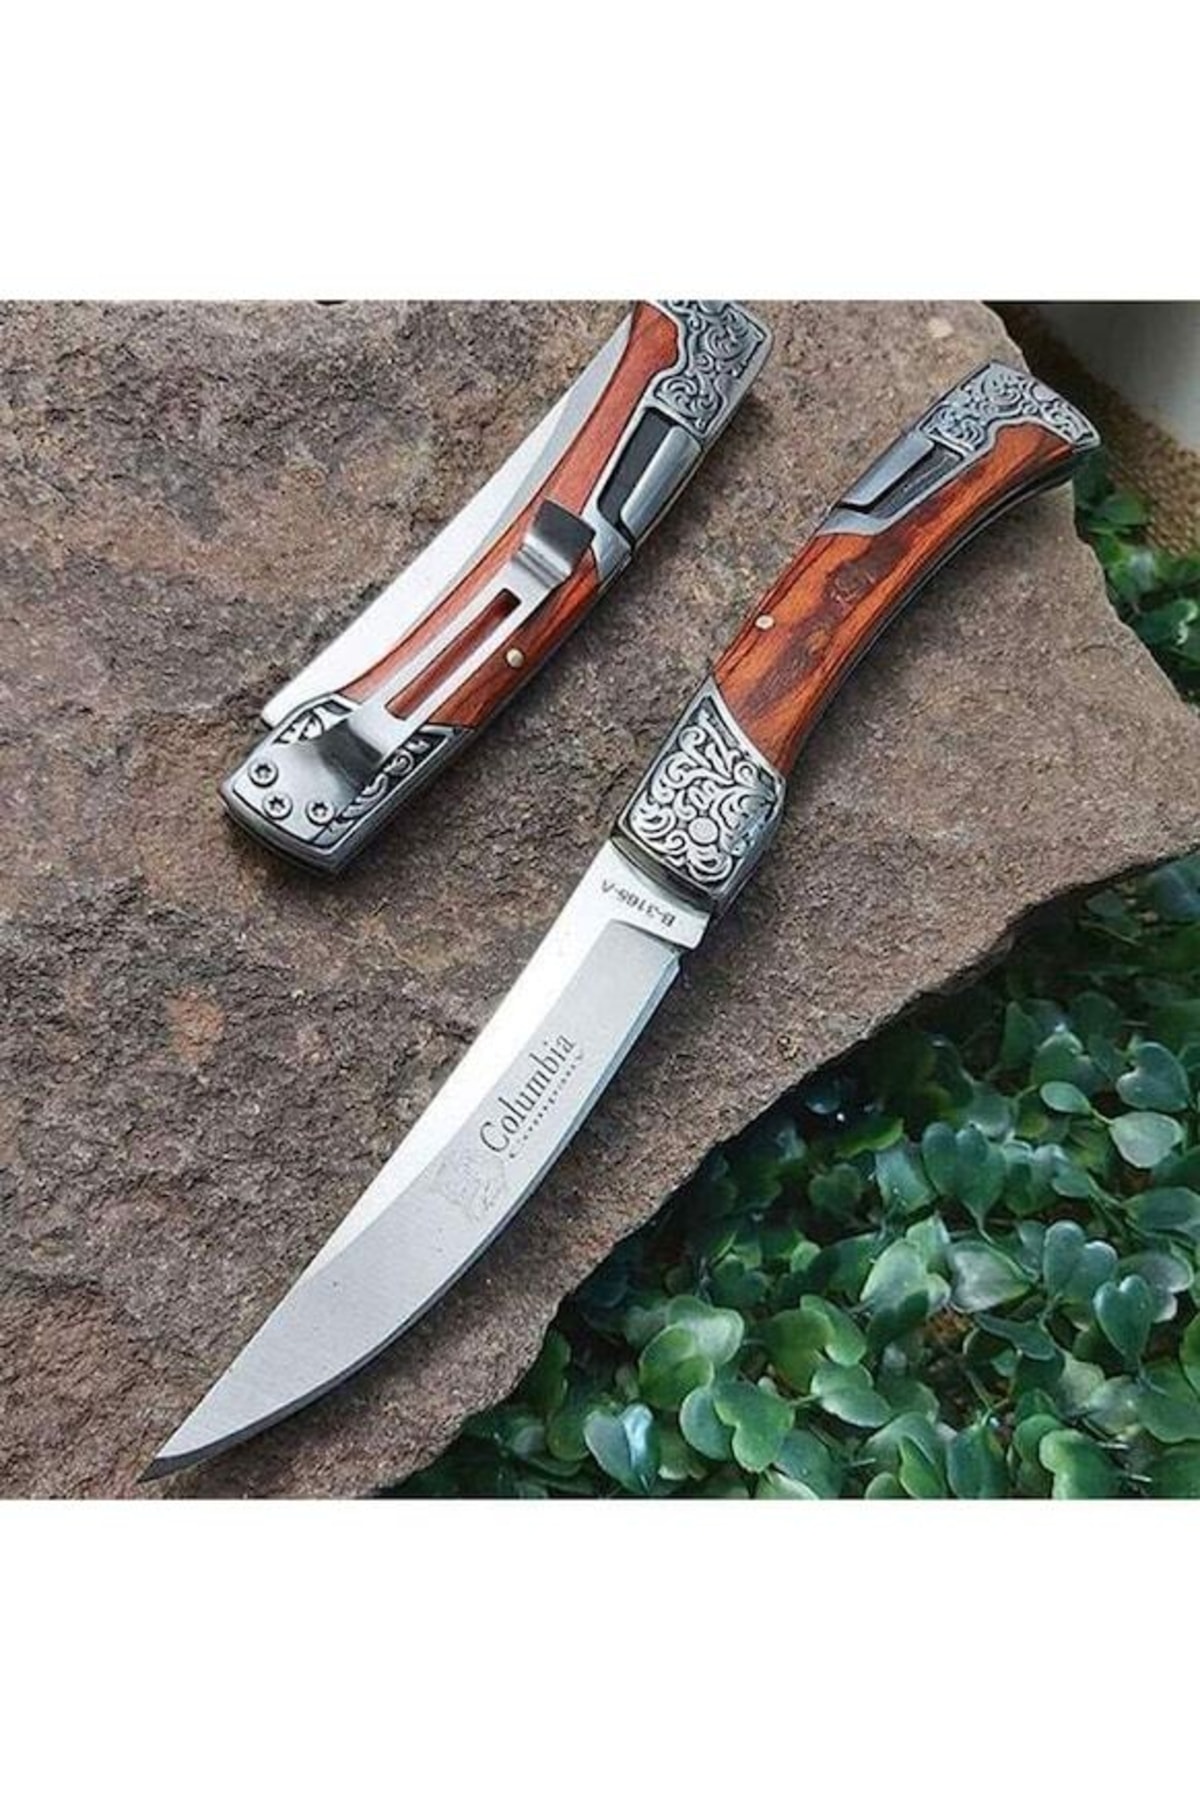 Anatoliahediyelik 23cm Columbia Işlemeli Avcı Bıçağı Ve Kibrit Kamp & Outdoor Kelebek